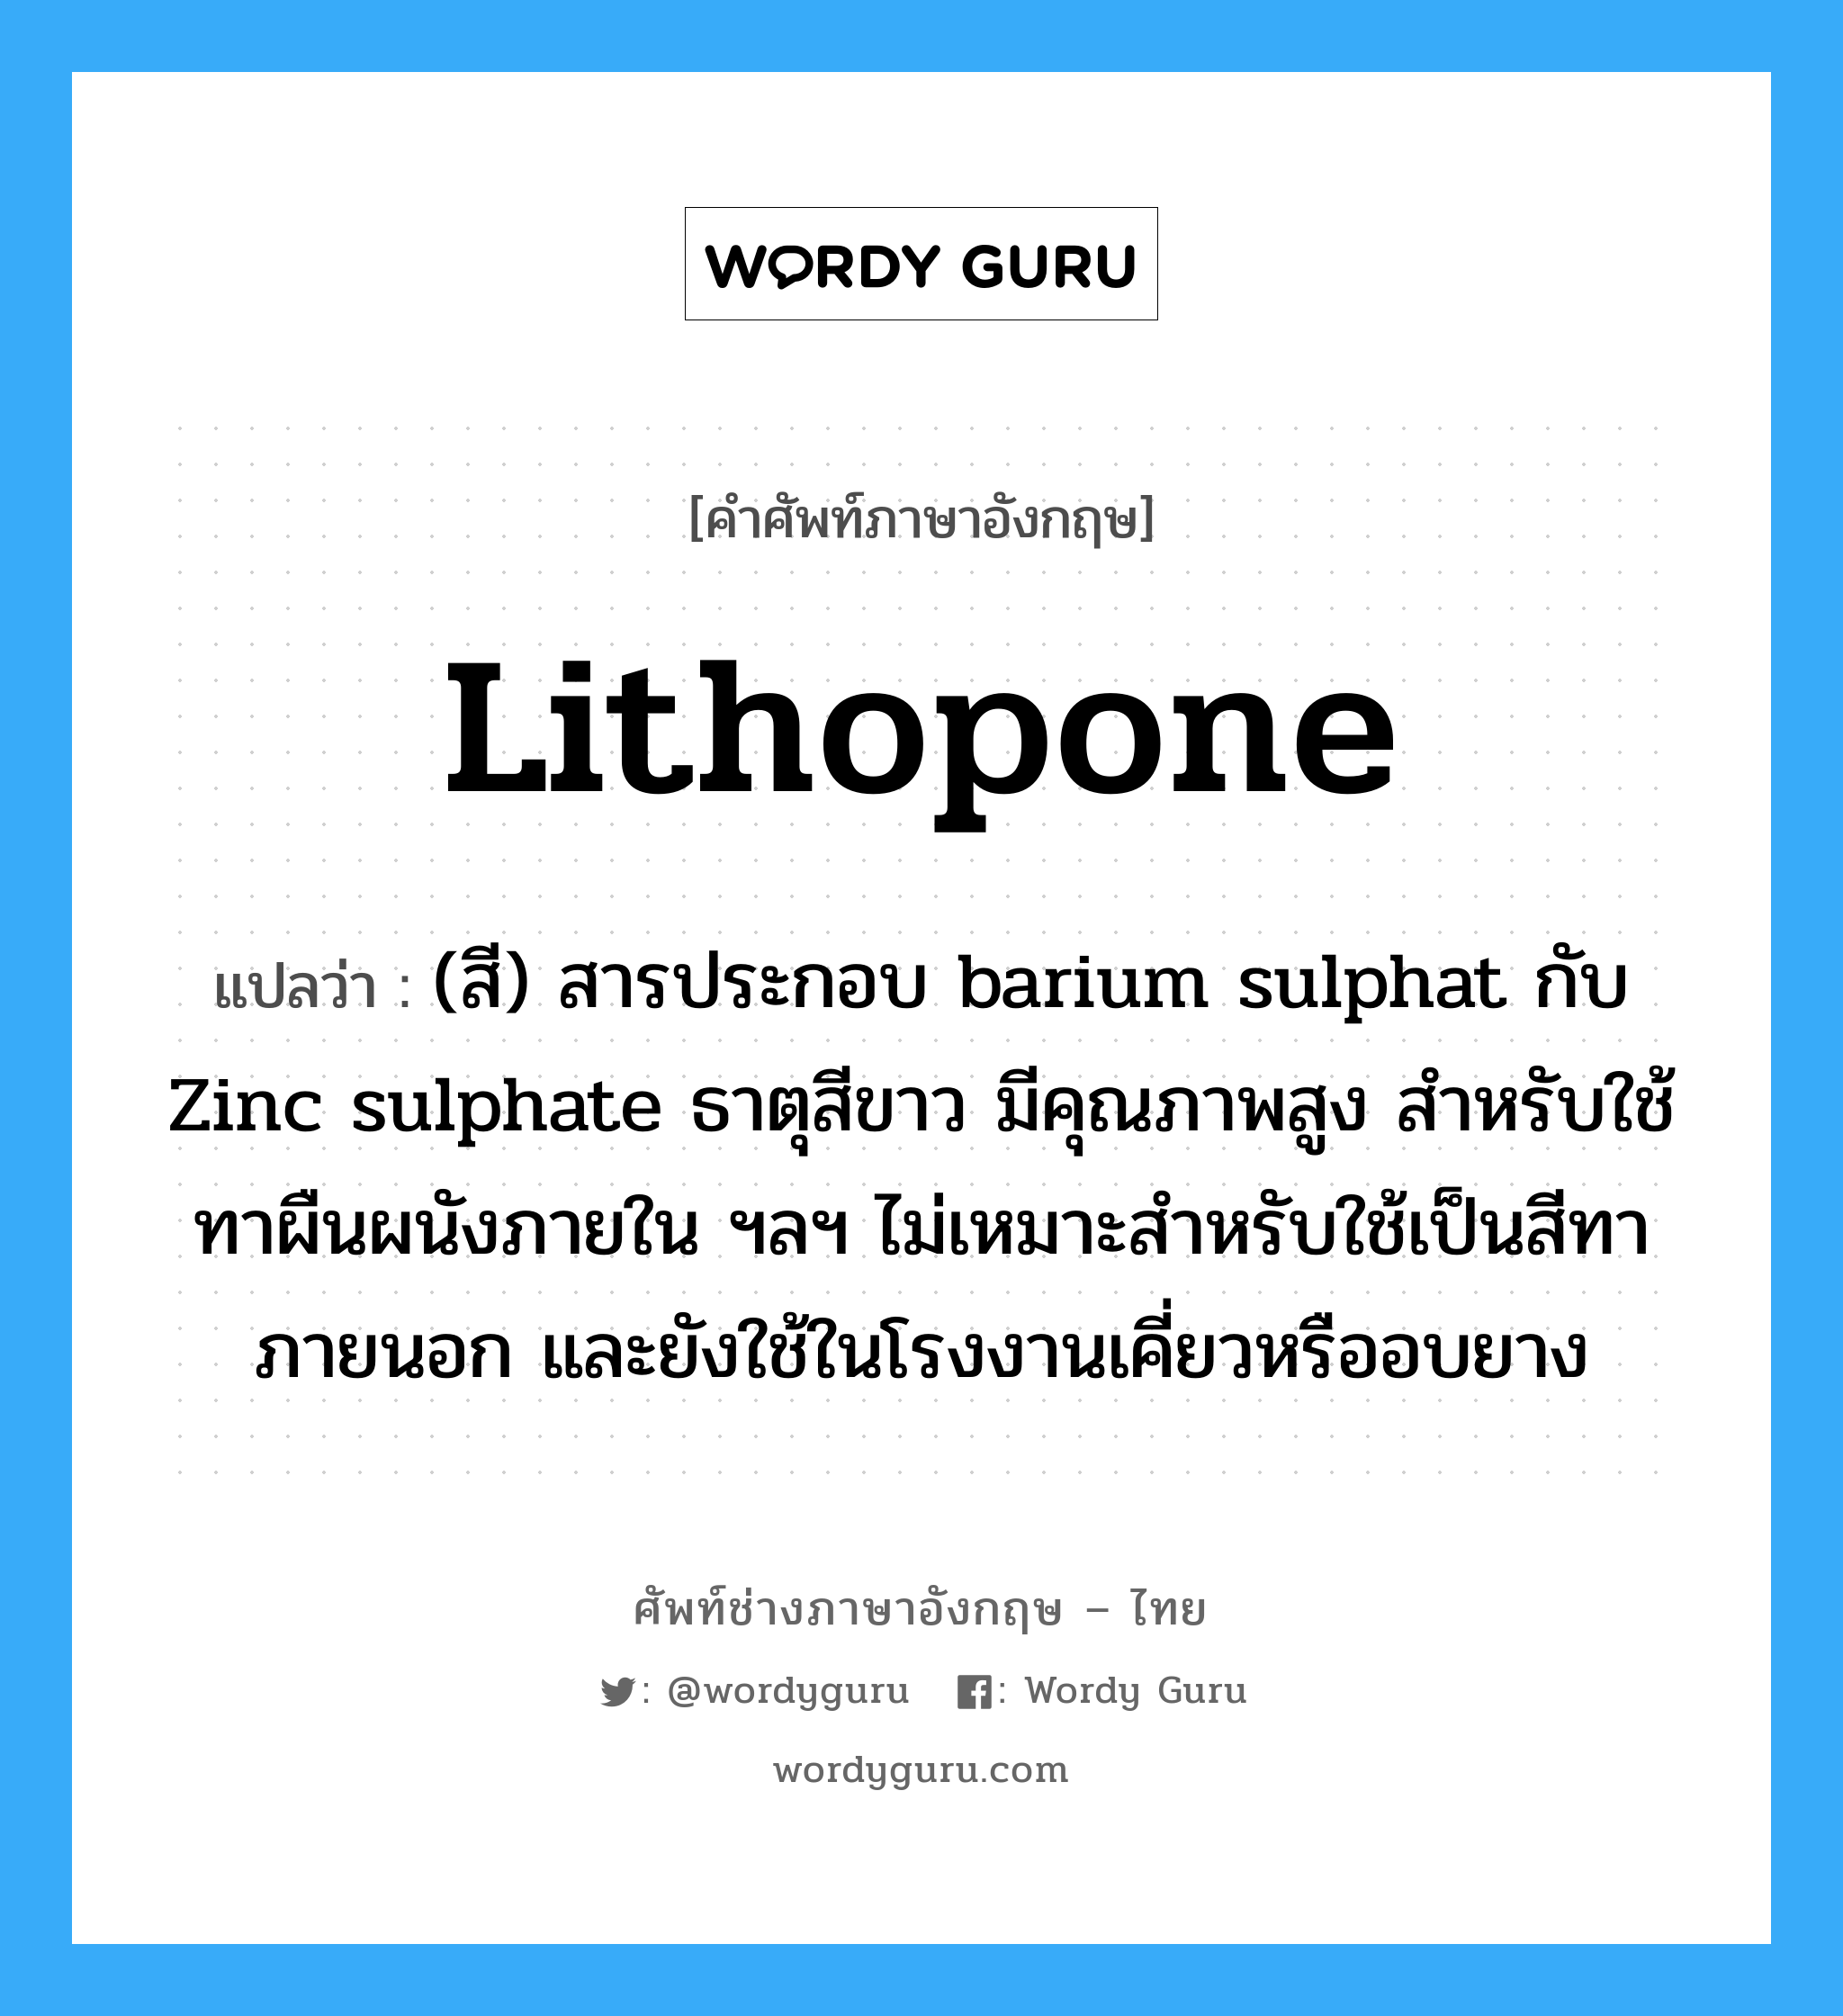 lithopone แปลว่า?, คำศัพท์ช่างภาษาอังกฤษ - ไทย lithopone คำศัพท์ภาษาอังกฤษ lithopone แปลว่า (สี) สารประกอบ barium sulphat กับ Zinc sulphate ธาตุสีขาว มีคุณภาพสูง สำหรับใช้ทาผืนผนังภายใน ฯลฯ ไม่เหมาะสำหรับใช้เป็นสีทาภายนอก และยังใช้ในโรงงานเคี่ยวหรืออบยาง